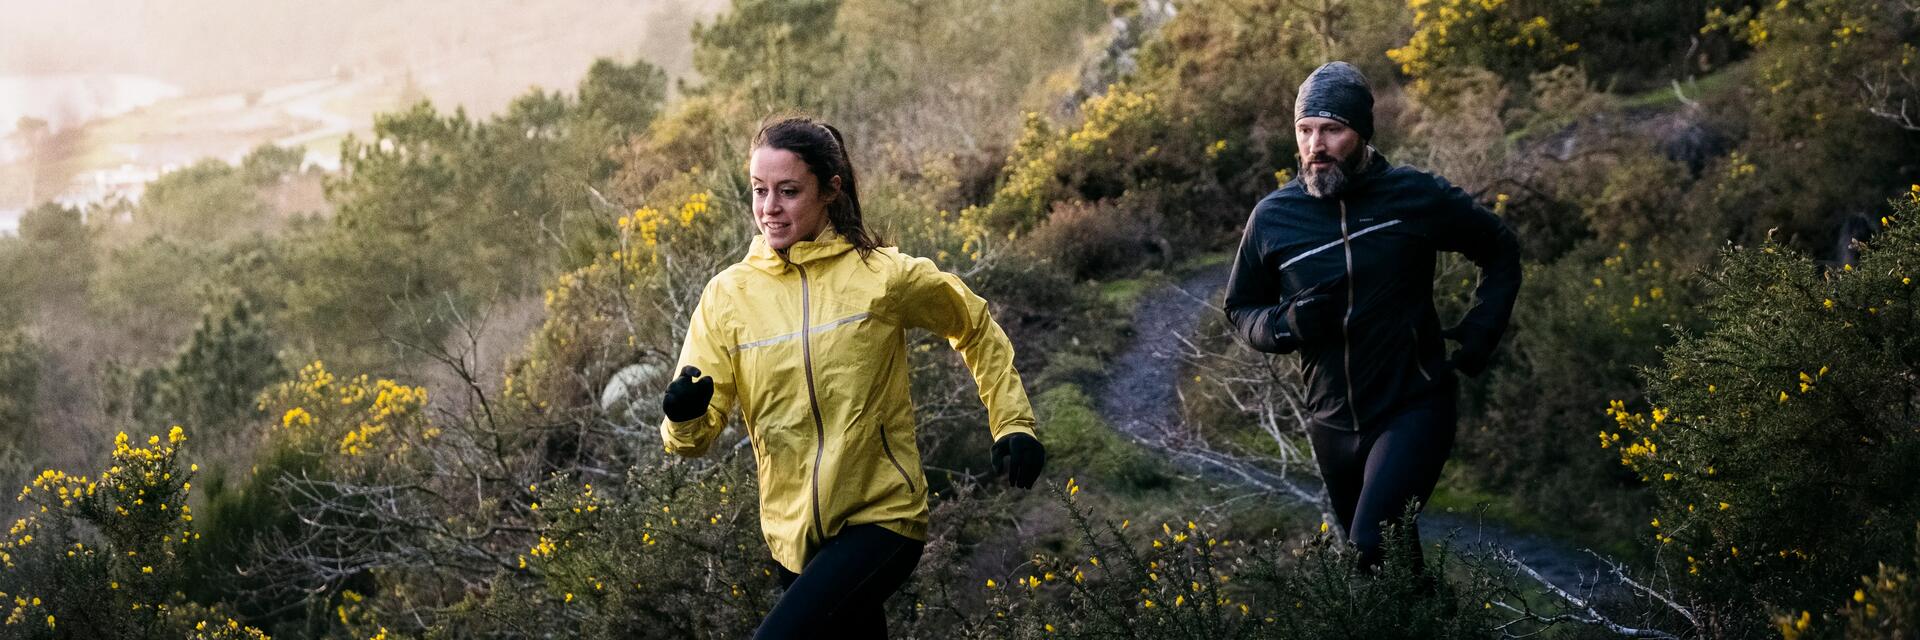 mężczyzna i kobieta w odzieży do biegania w terenie biegnący po trasie z naturalnymi przeszkodami